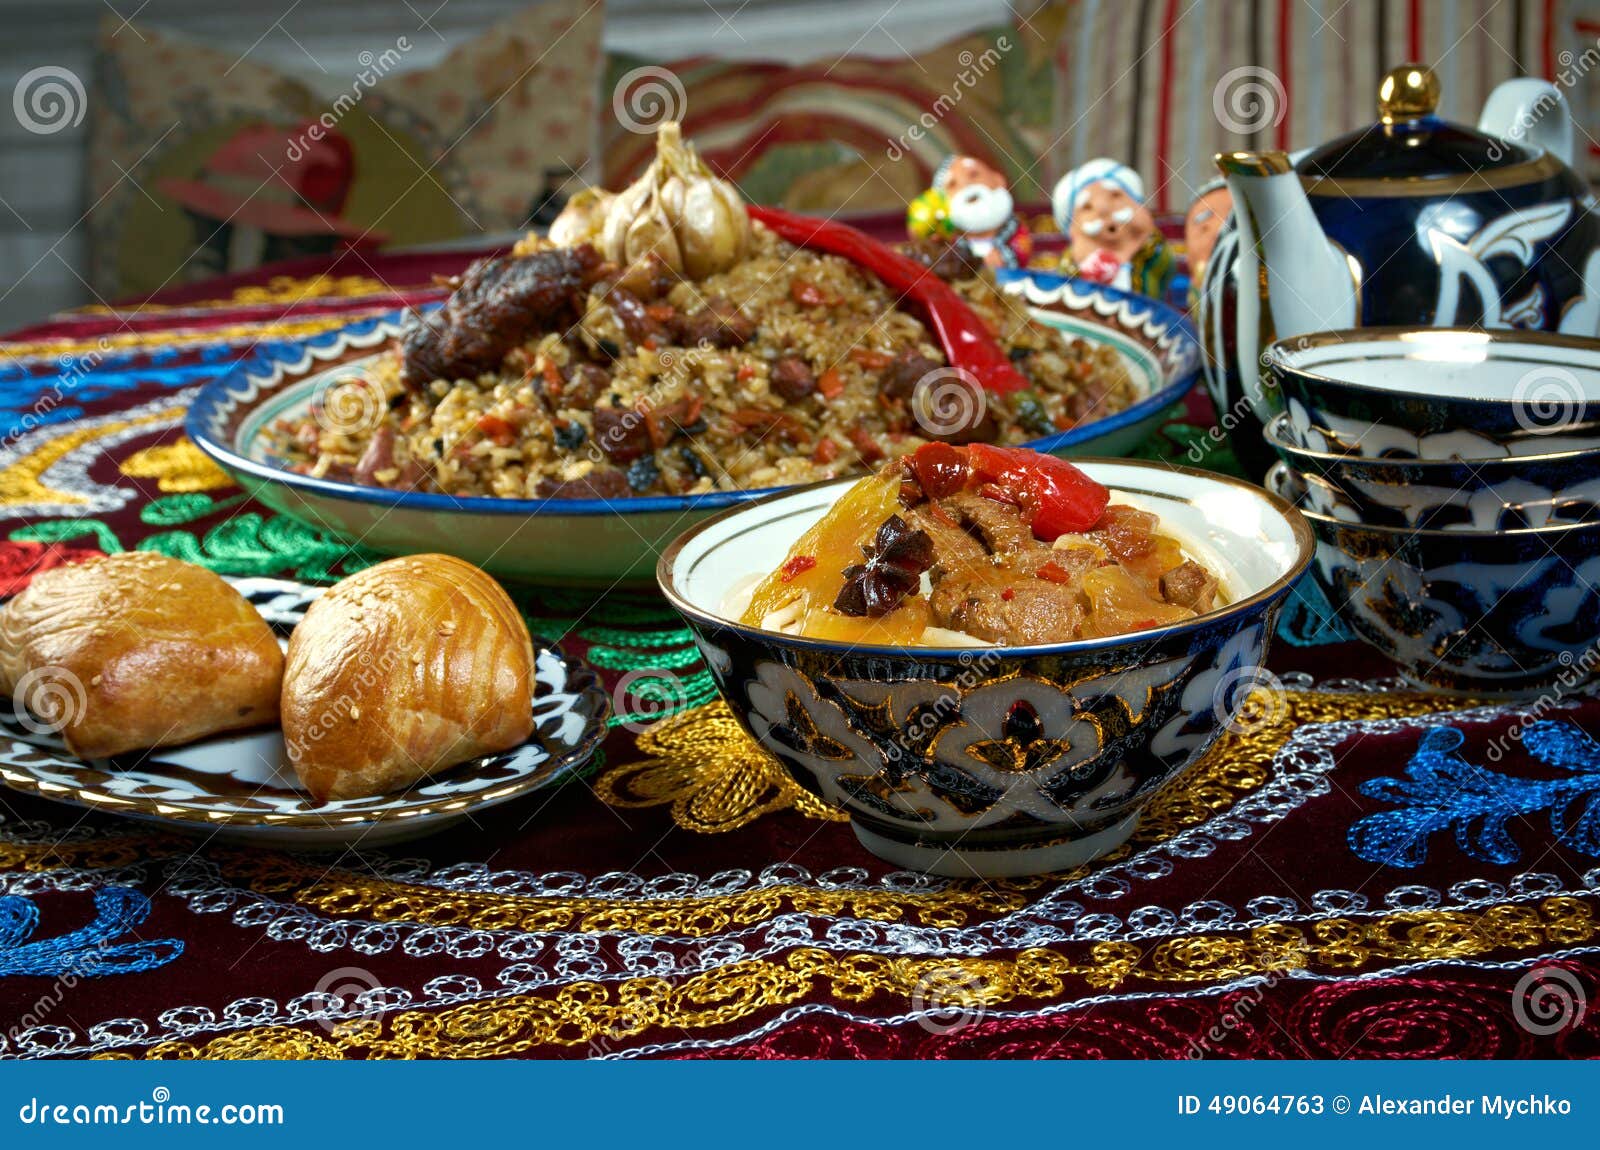 Central Asian Cuisine 74